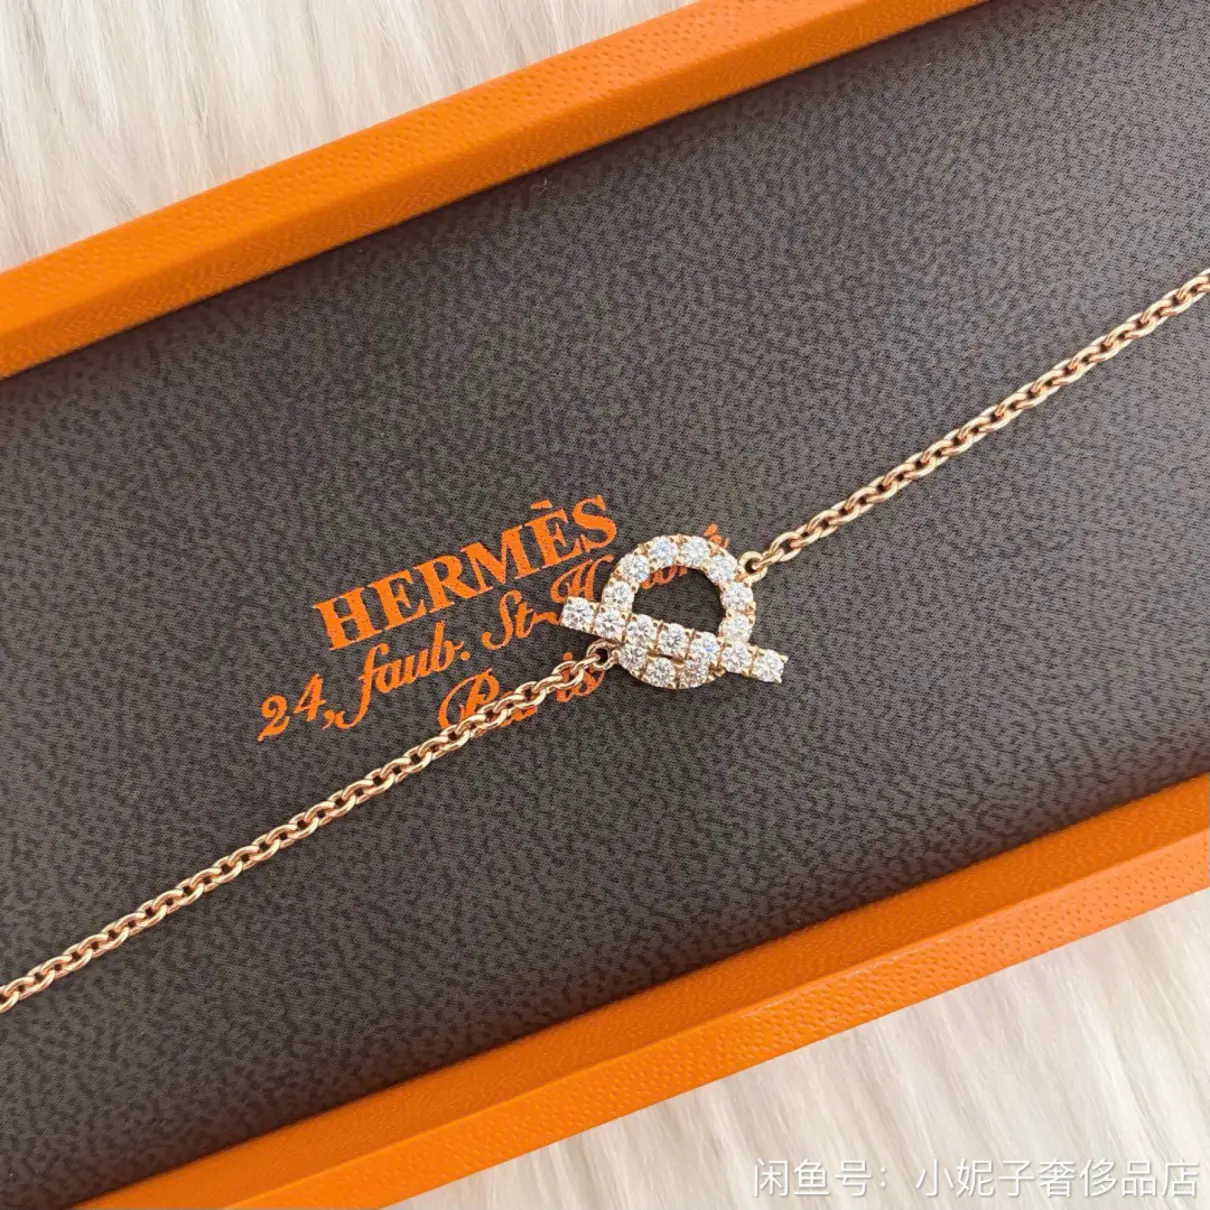 Buy Hermès Finesse pink gold bracelet online